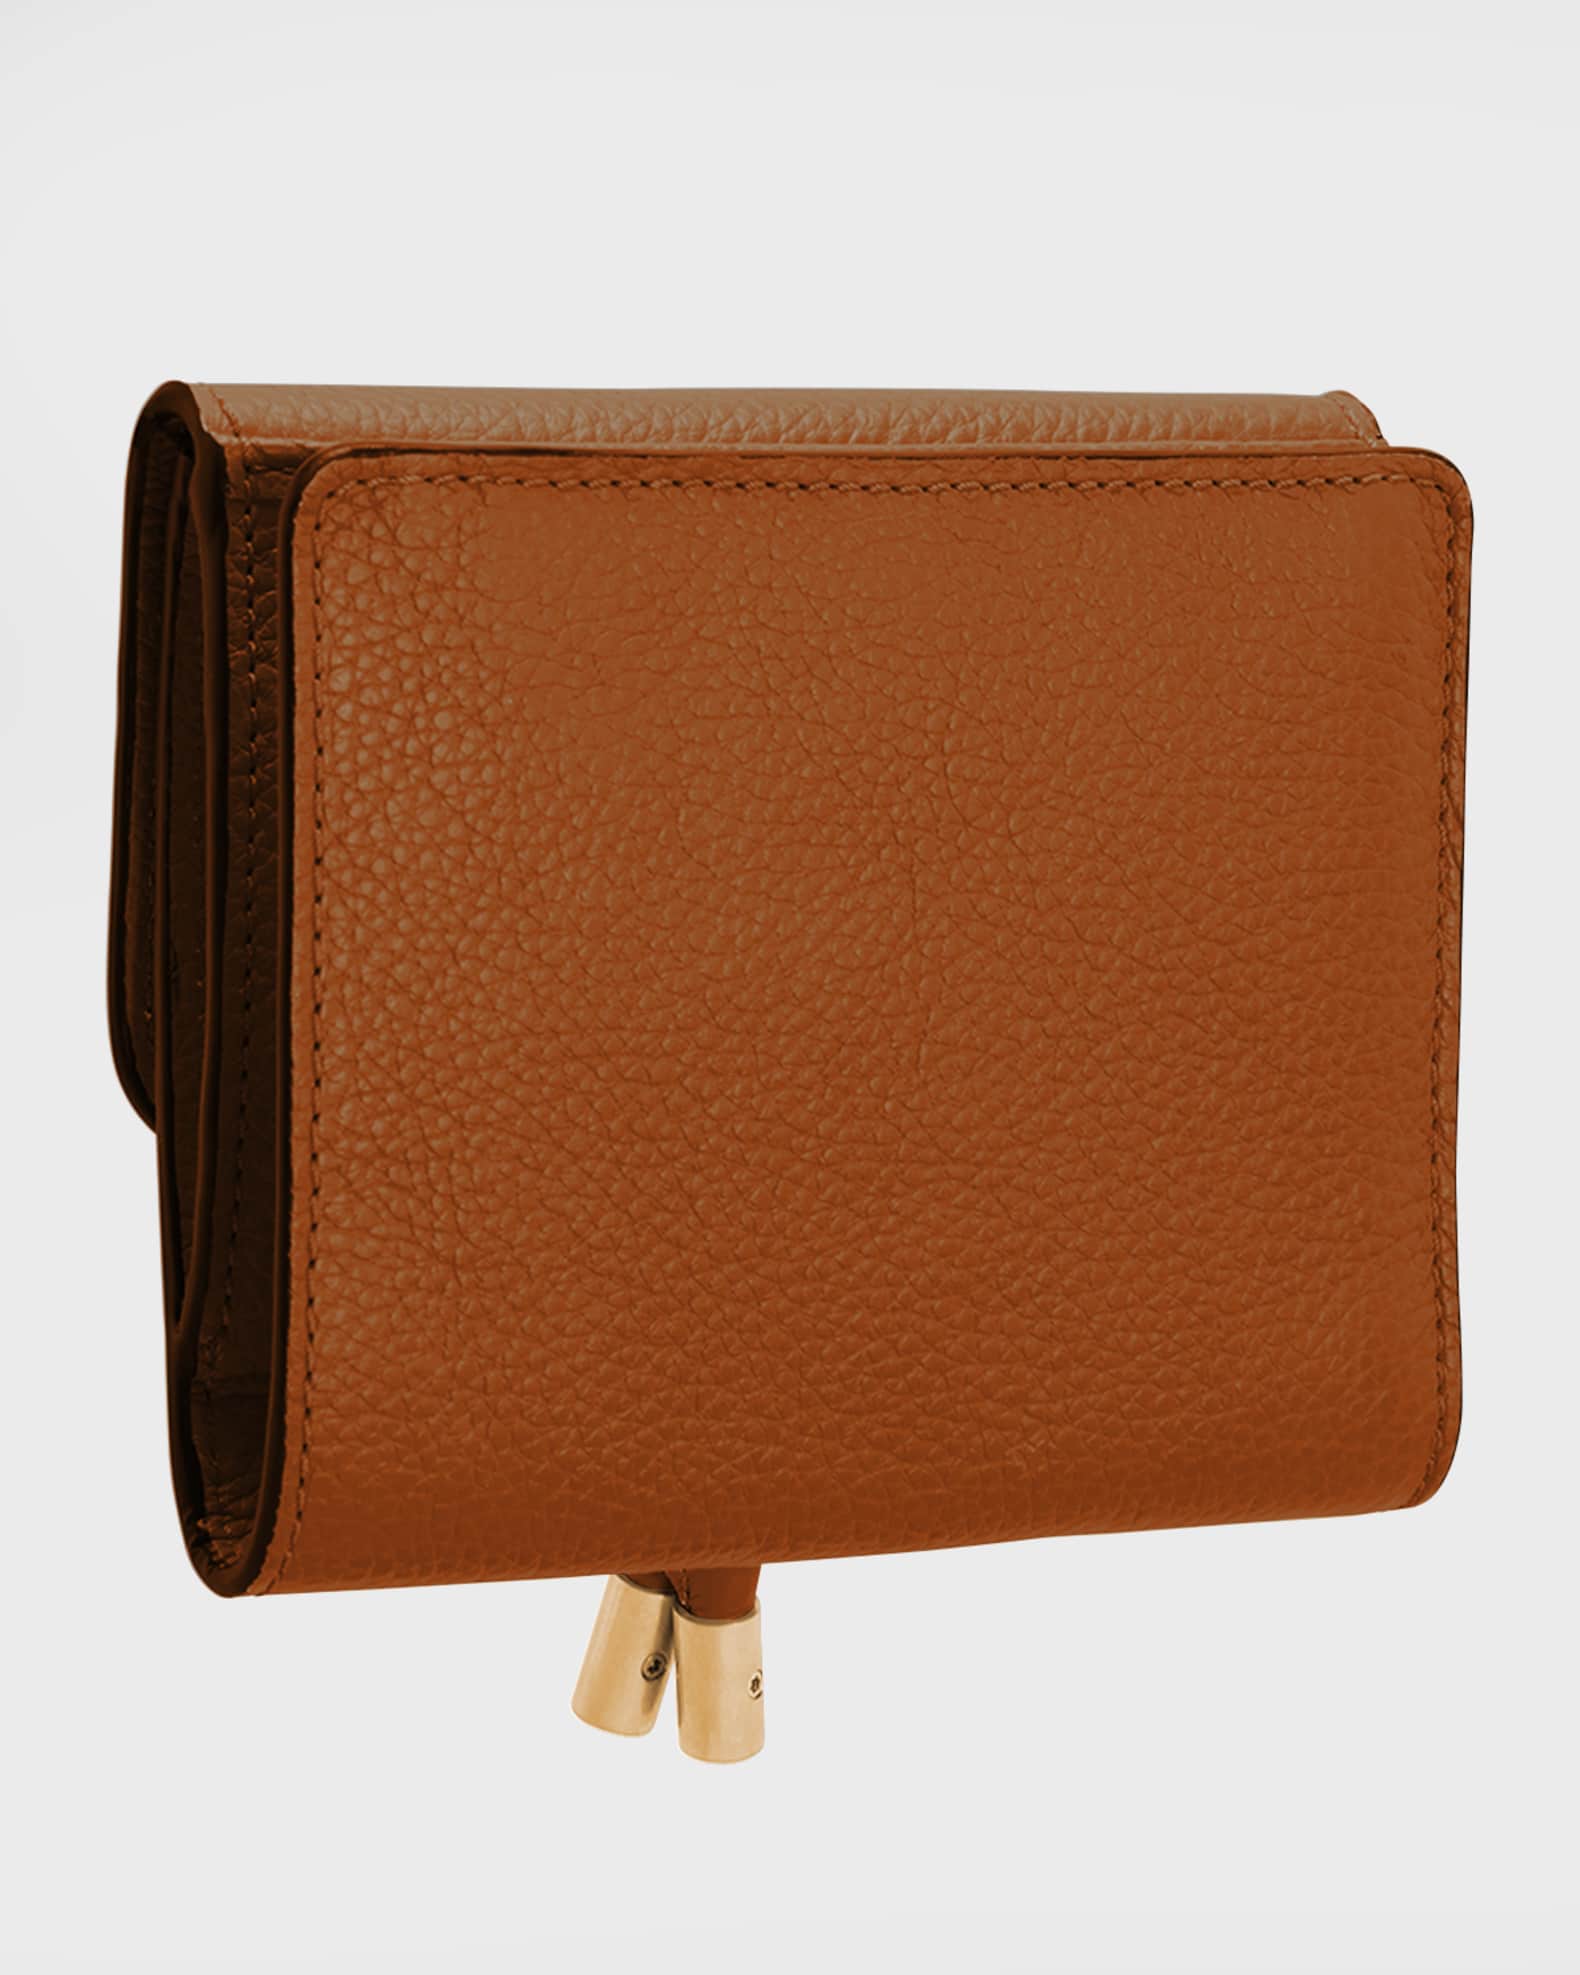 Mini flap bag & star coin purse, Mirror calfskin, metallic